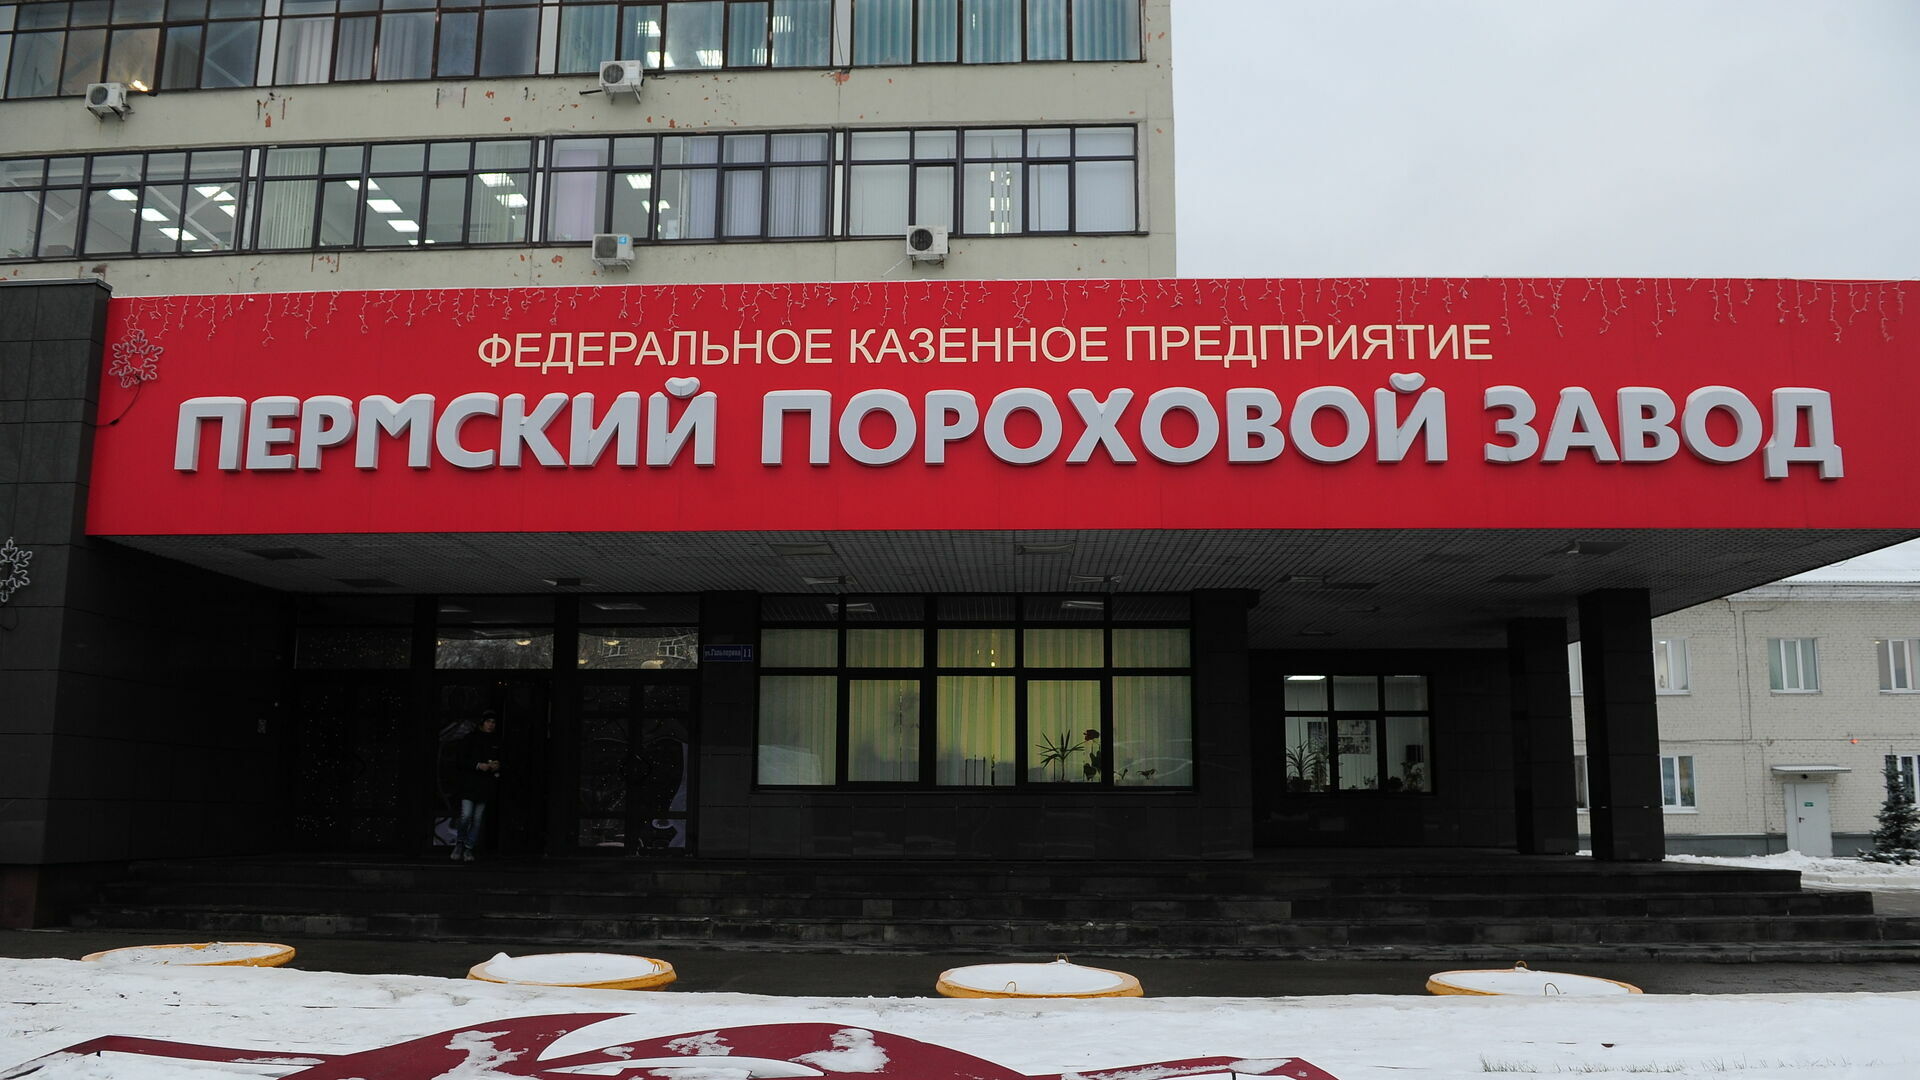 Минпромторг назвал «незначительным сокращением» увольнение 147 сотрудников Пермского порохового завода